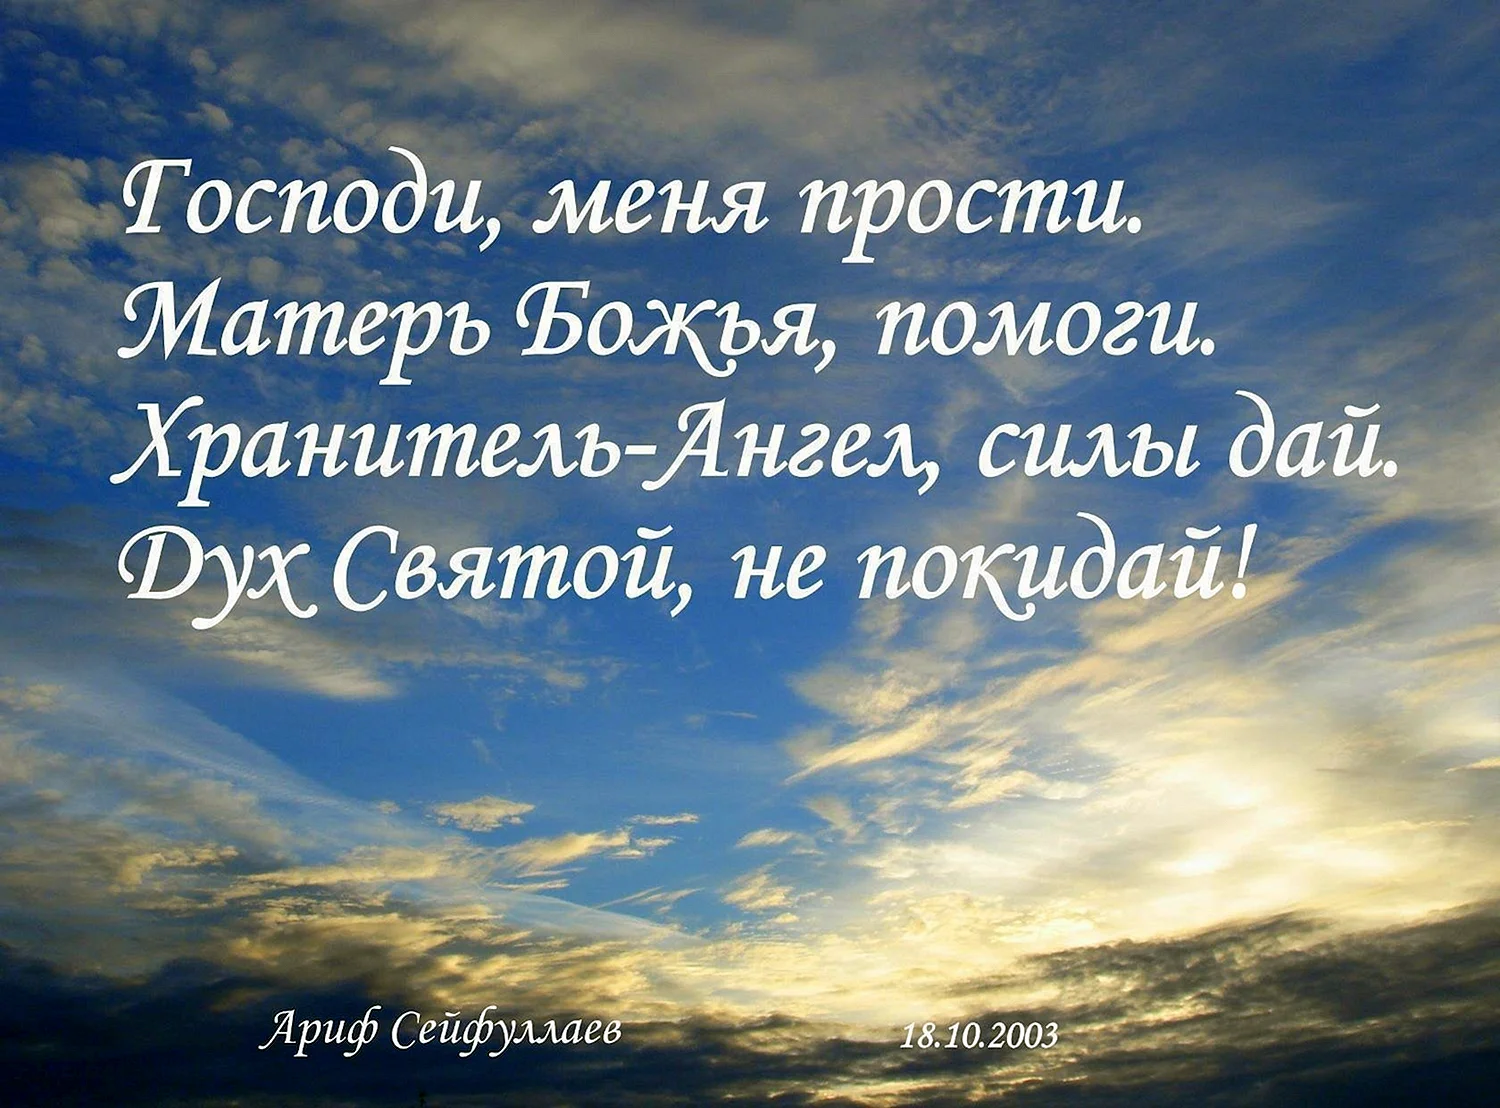 Доброе утро православные цитаты